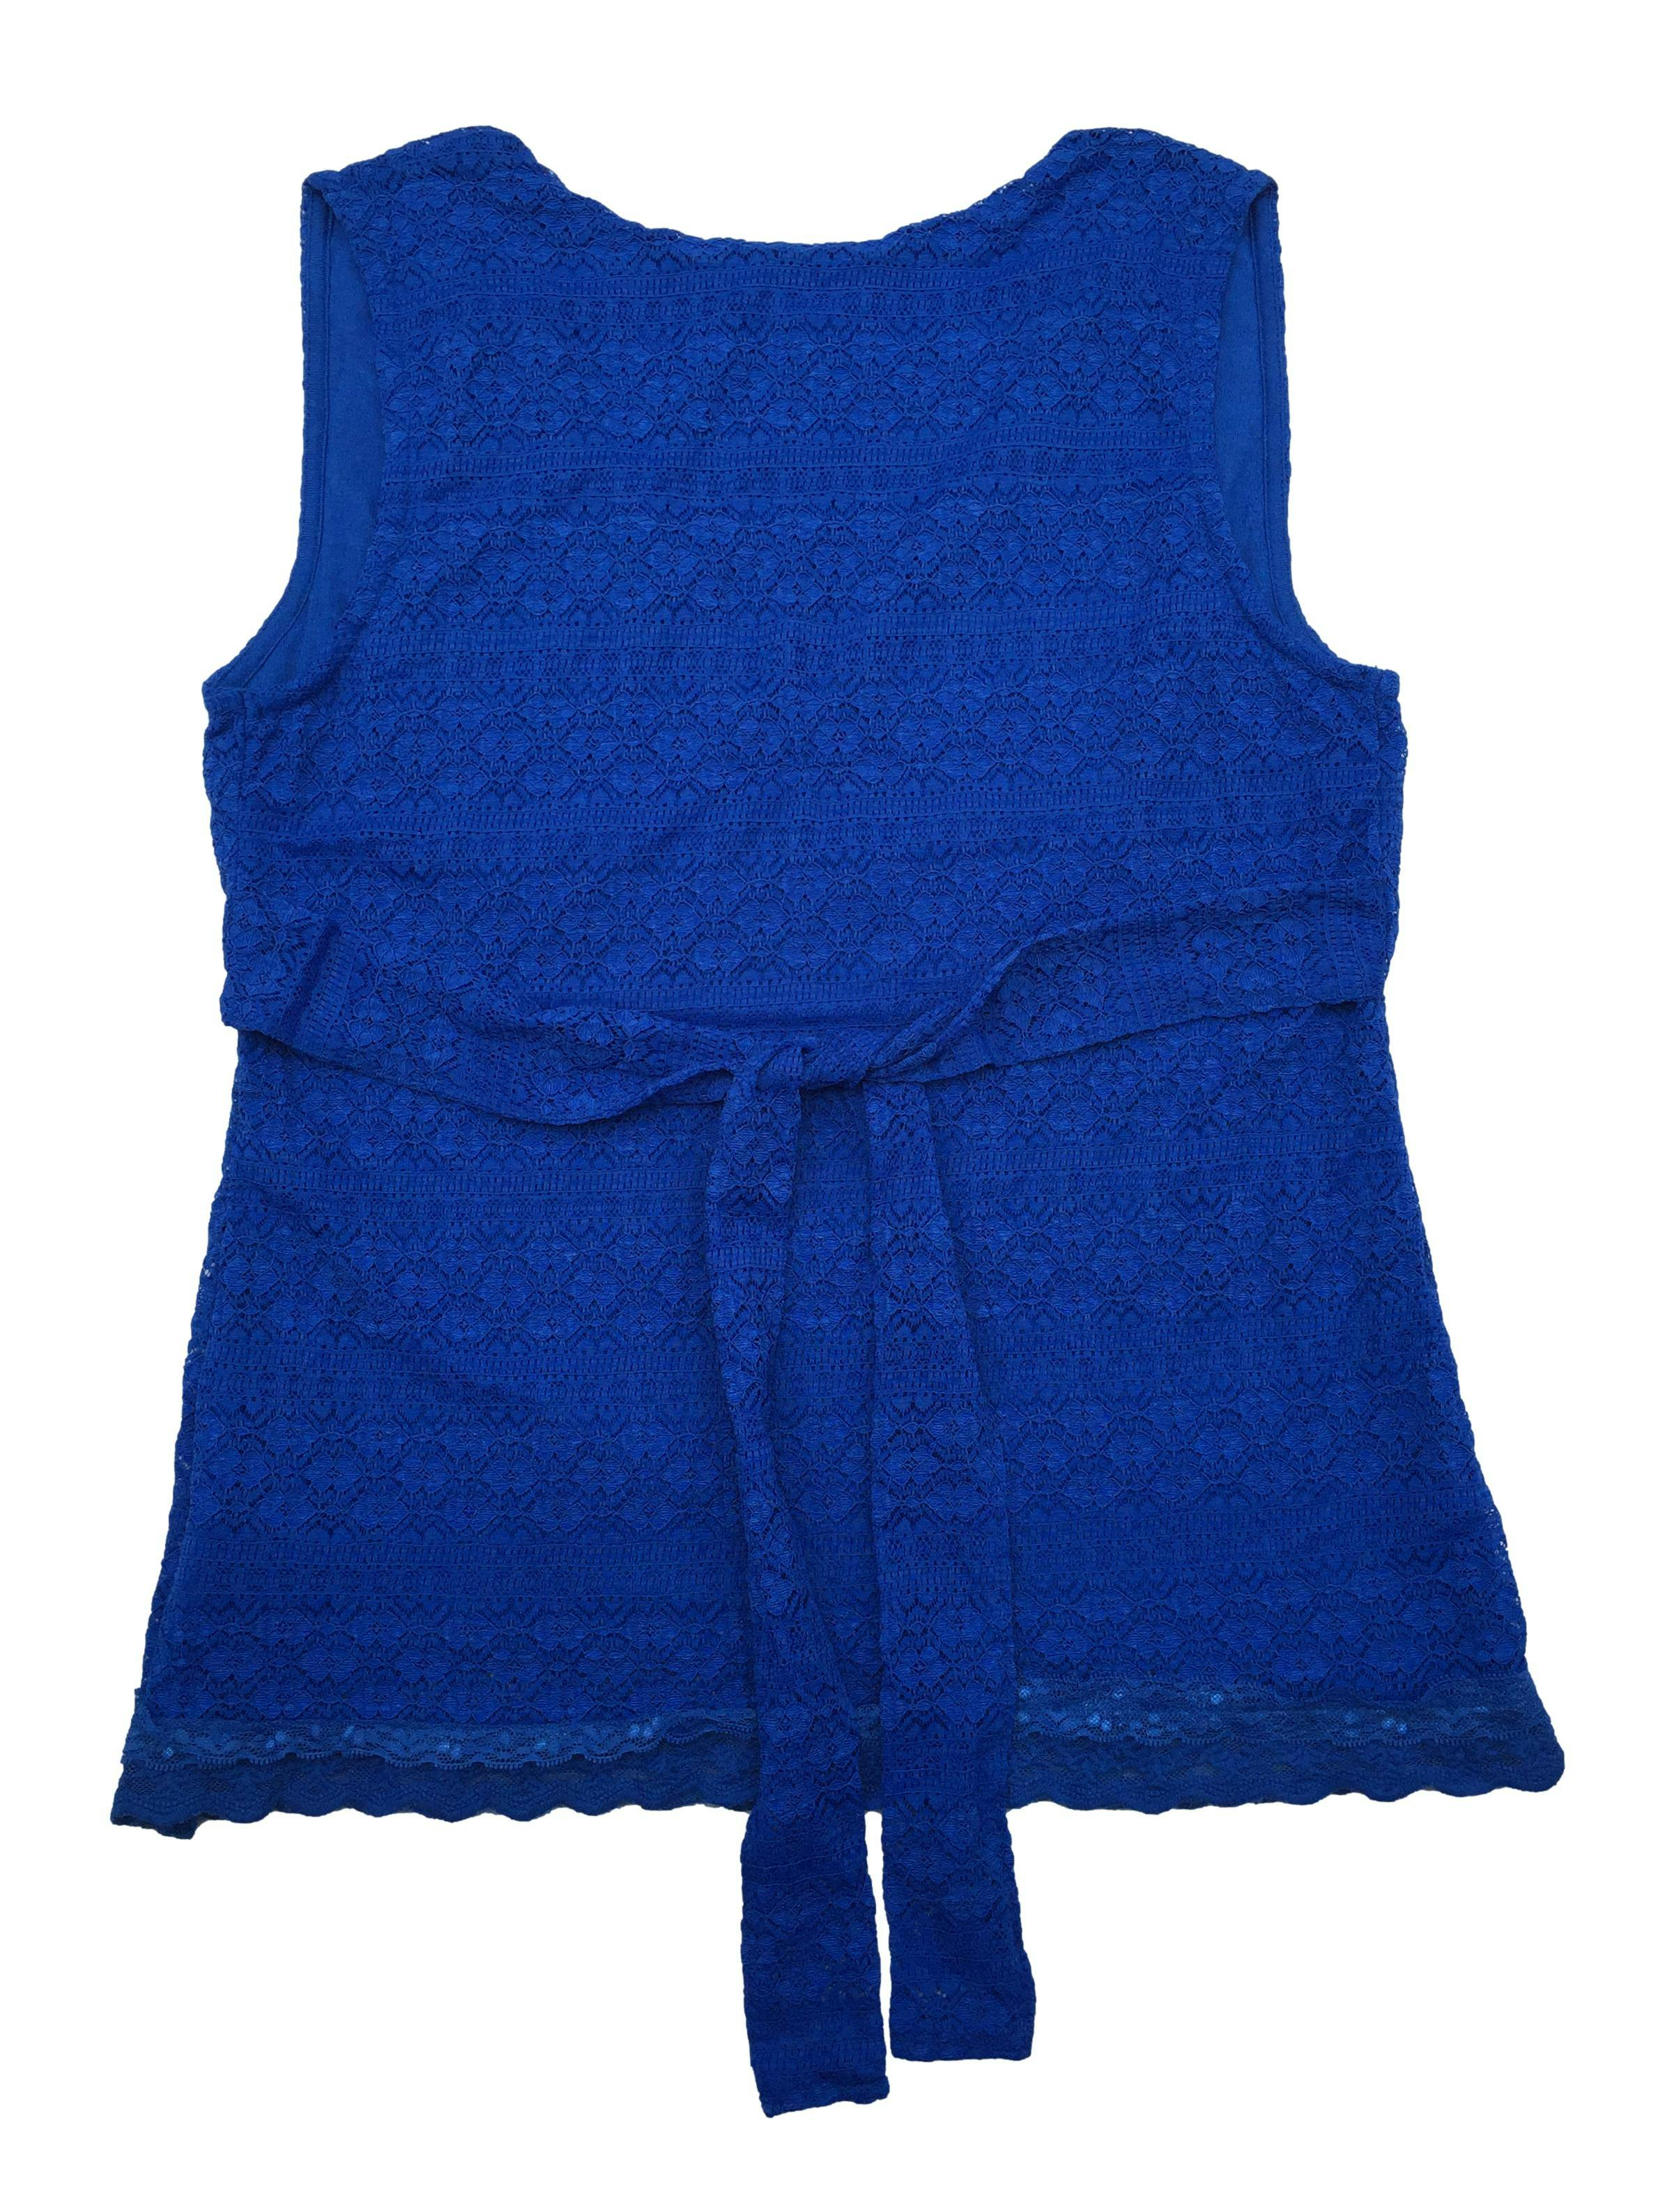 Blusa Tatienne de encaje azul con forro, escote cruzado y cintos. Busto 100cm, Largo 63cm.